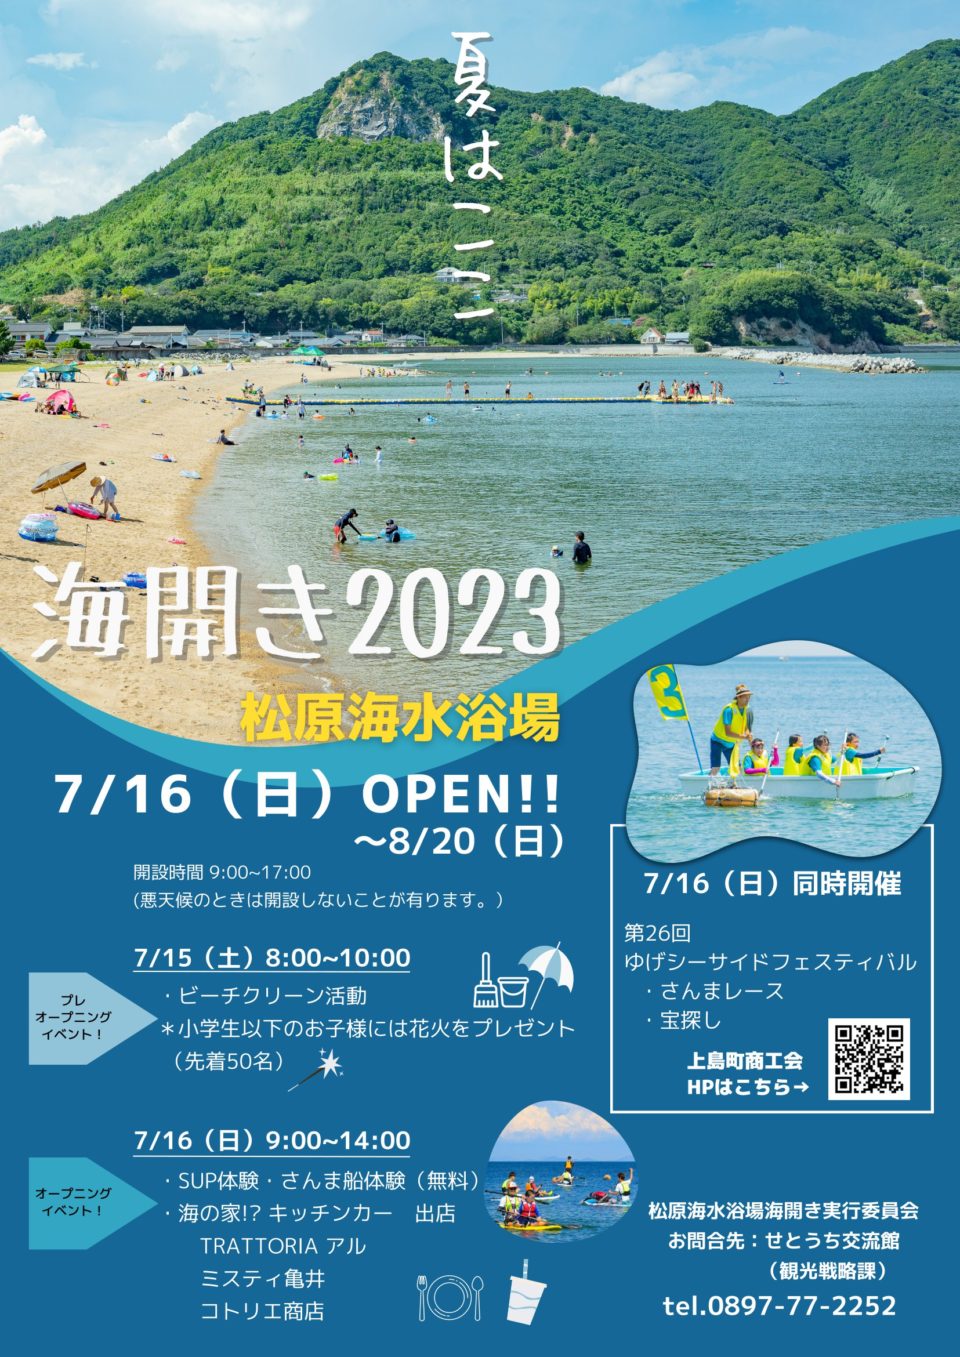 海開き 2023 -松原海水浴場-